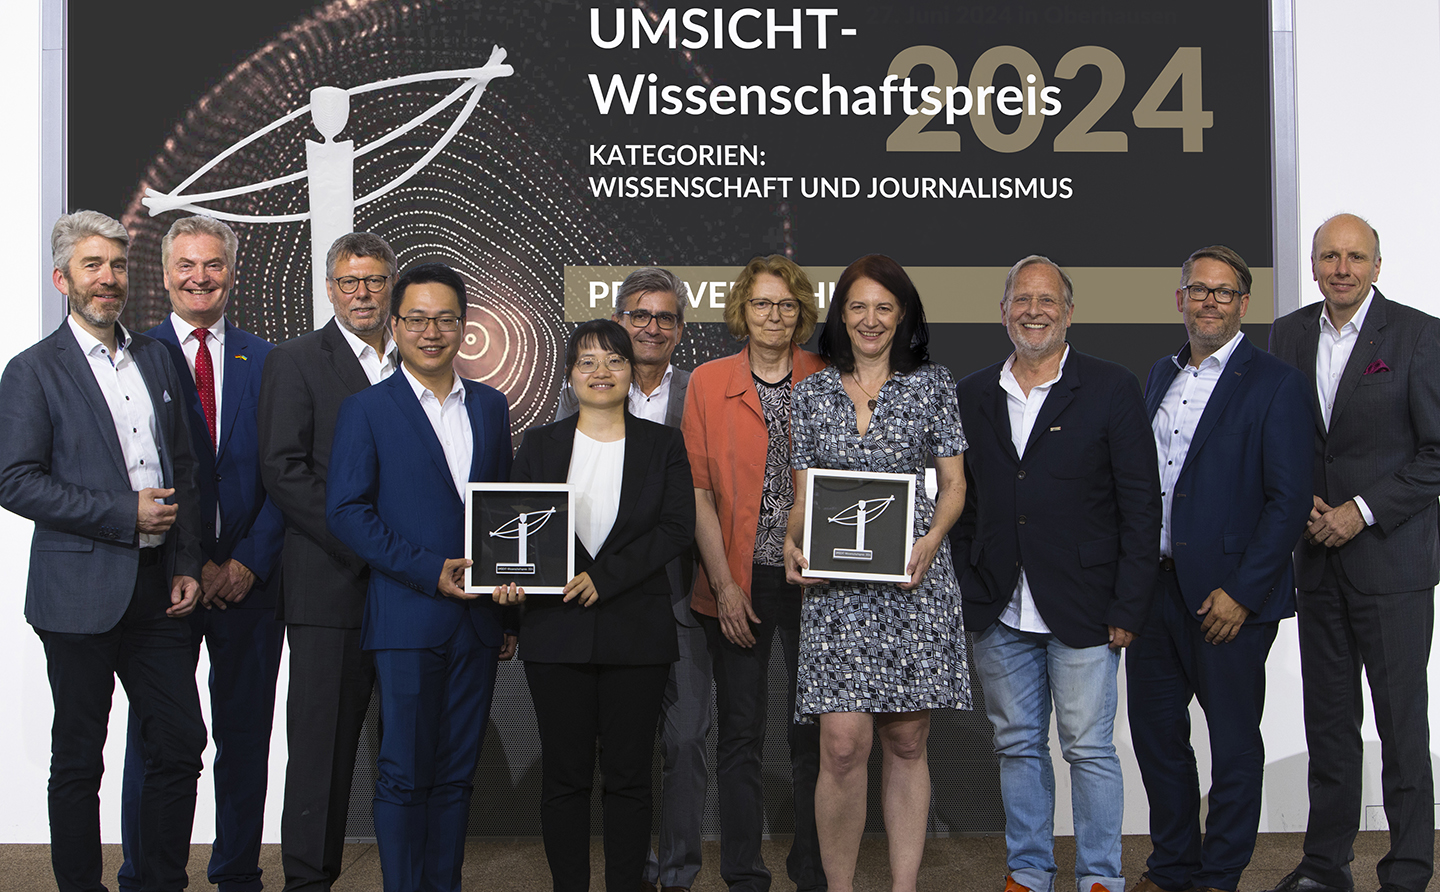 UMSICHT-Wissenschaftspreis 2024: Preisträger*innen und Unterstützer*innen